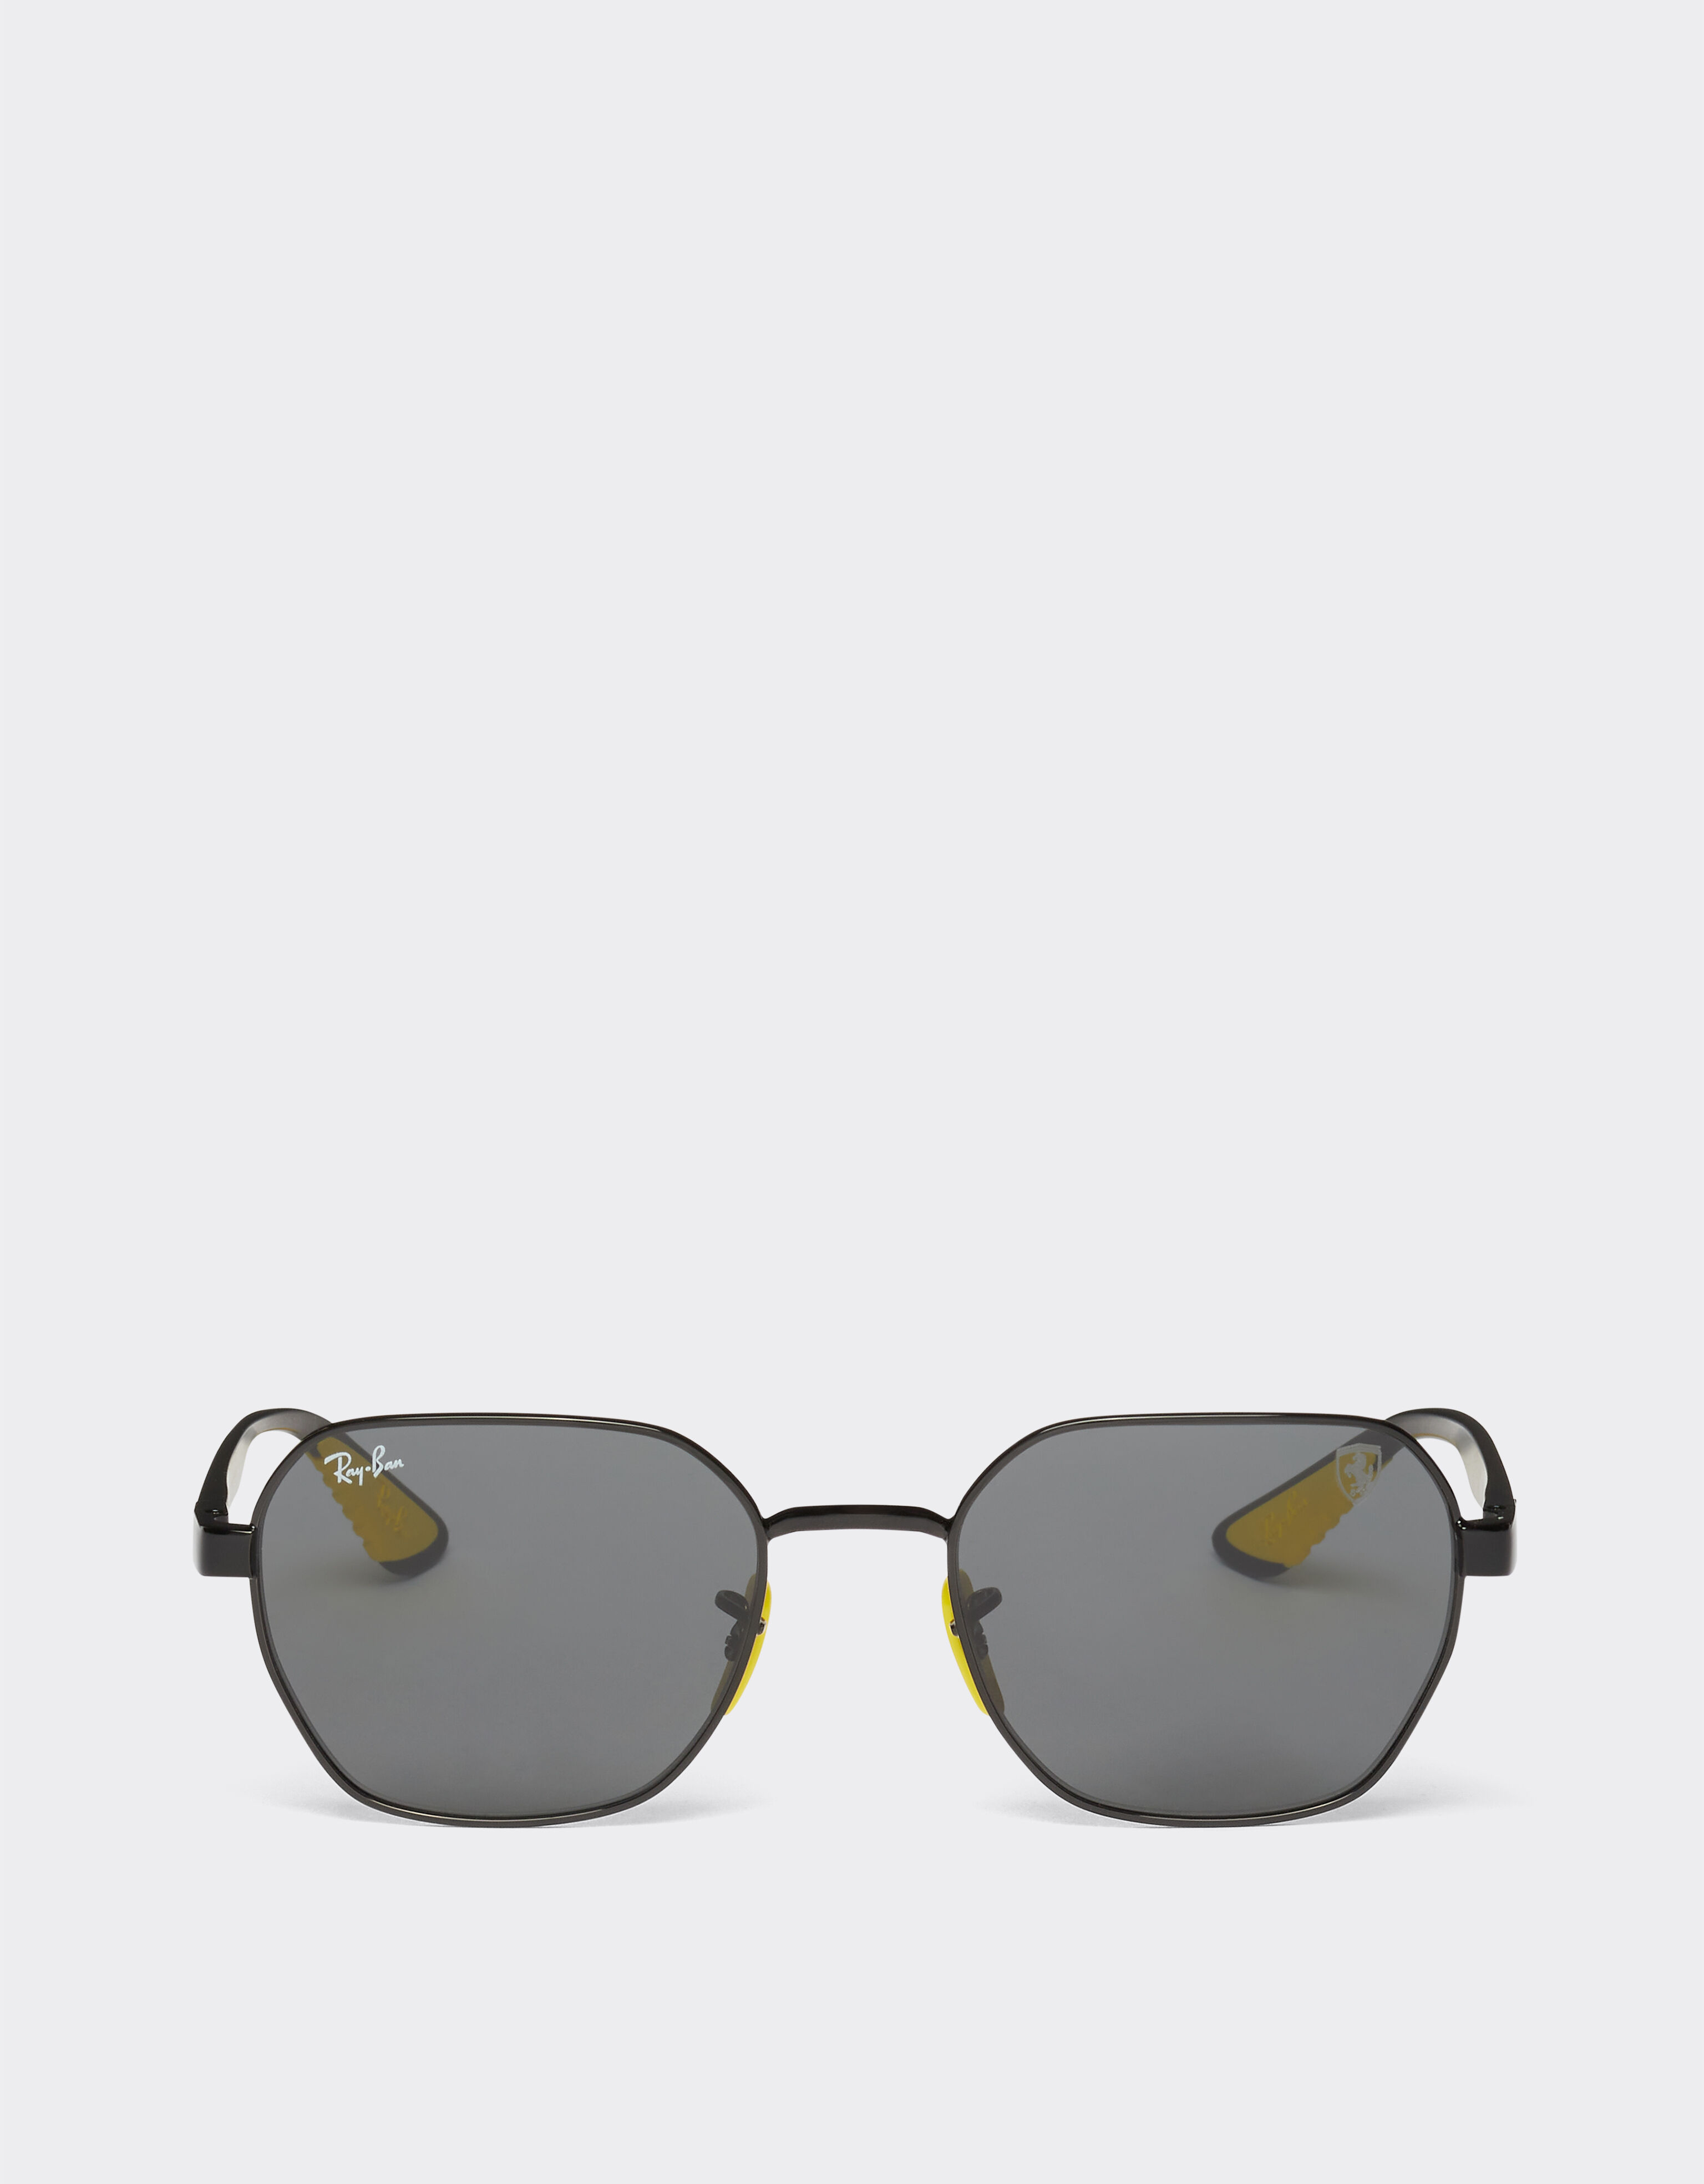 Ferrari Ray-Ban for Scuderia Ferrari 0RB3794M black metal sunglasses with grey lenses Rosso Corsa F1133f